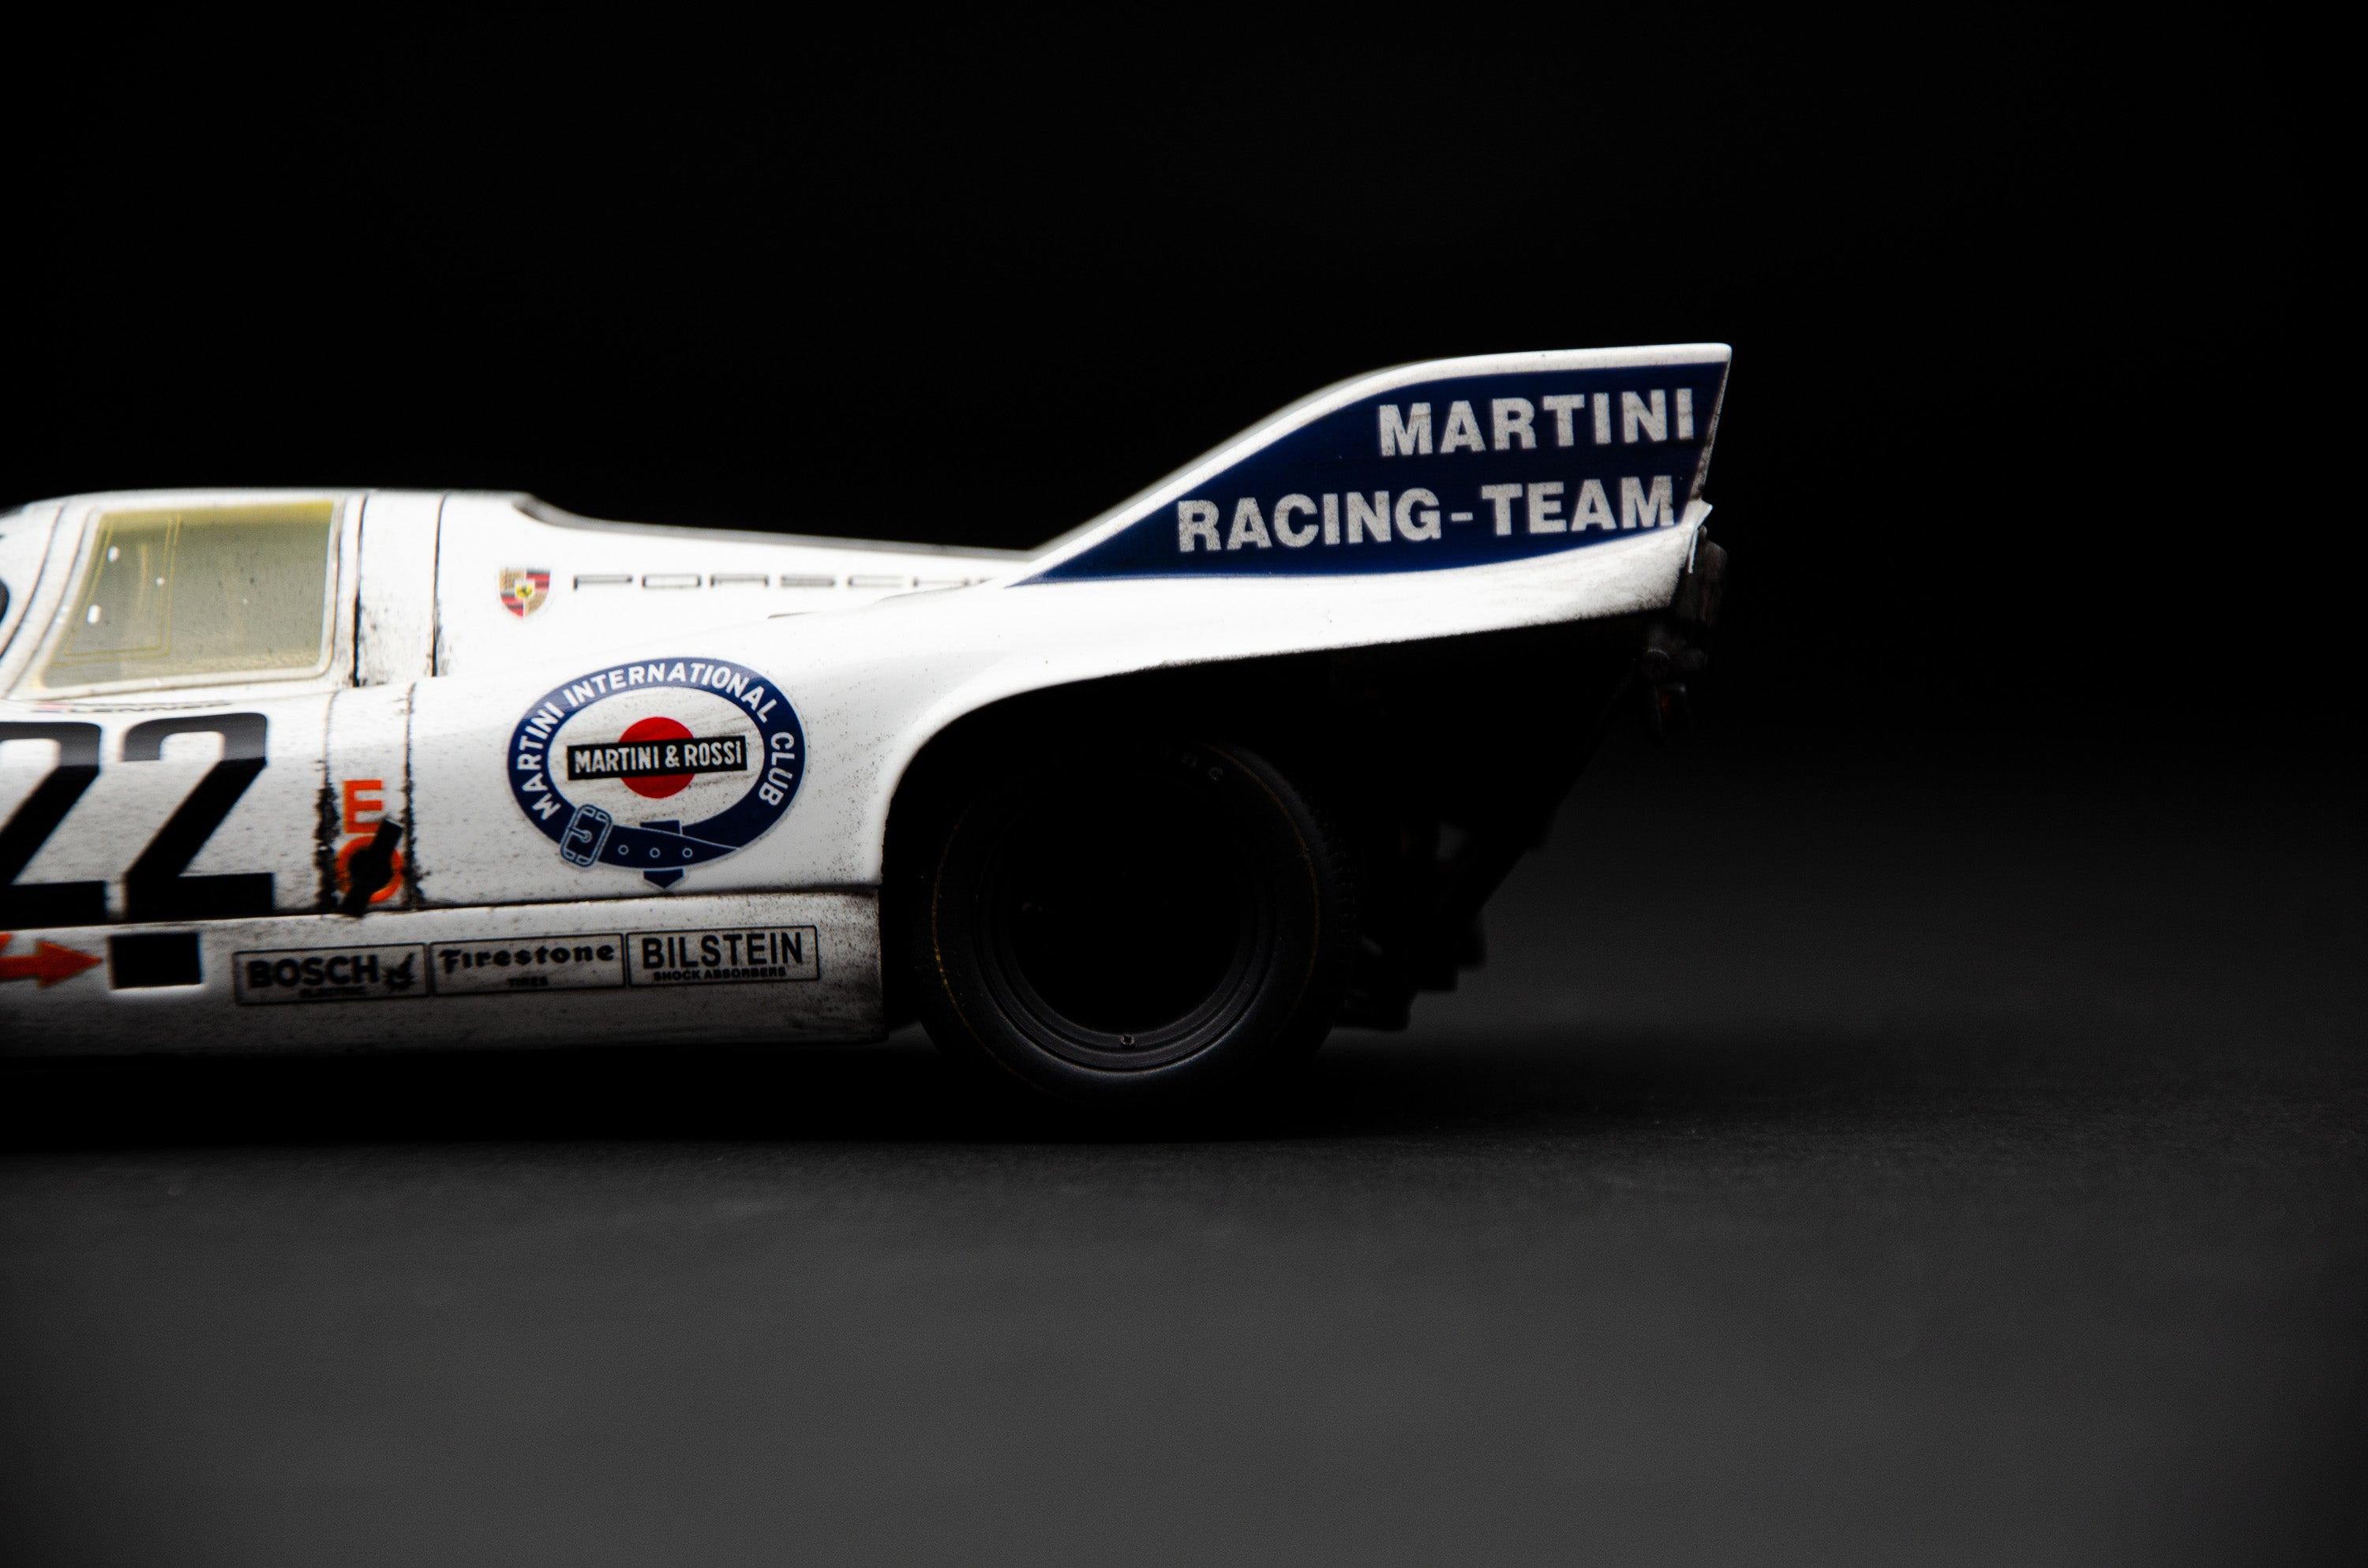 ポルシェ 917 KH - 1971 年ル・マン優勝車 - マルティーニ カラー 